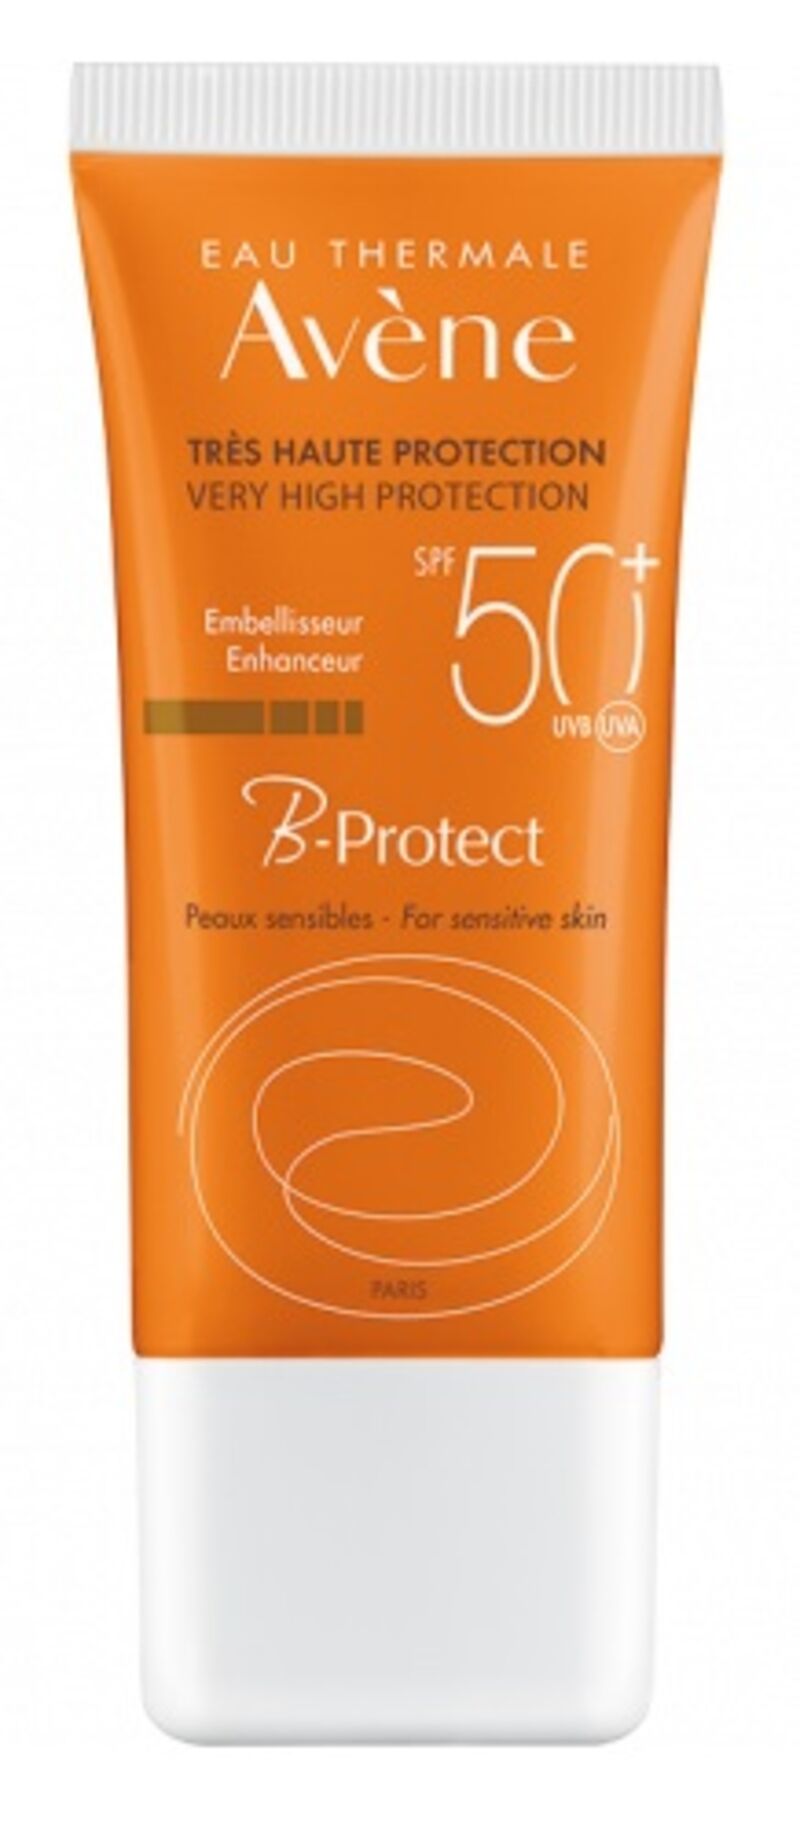 Avene Avène - B-Protect Protezione Viso SPF50+ Anti-inquinamento 30 ml - Protezione Solare e Antiossidante